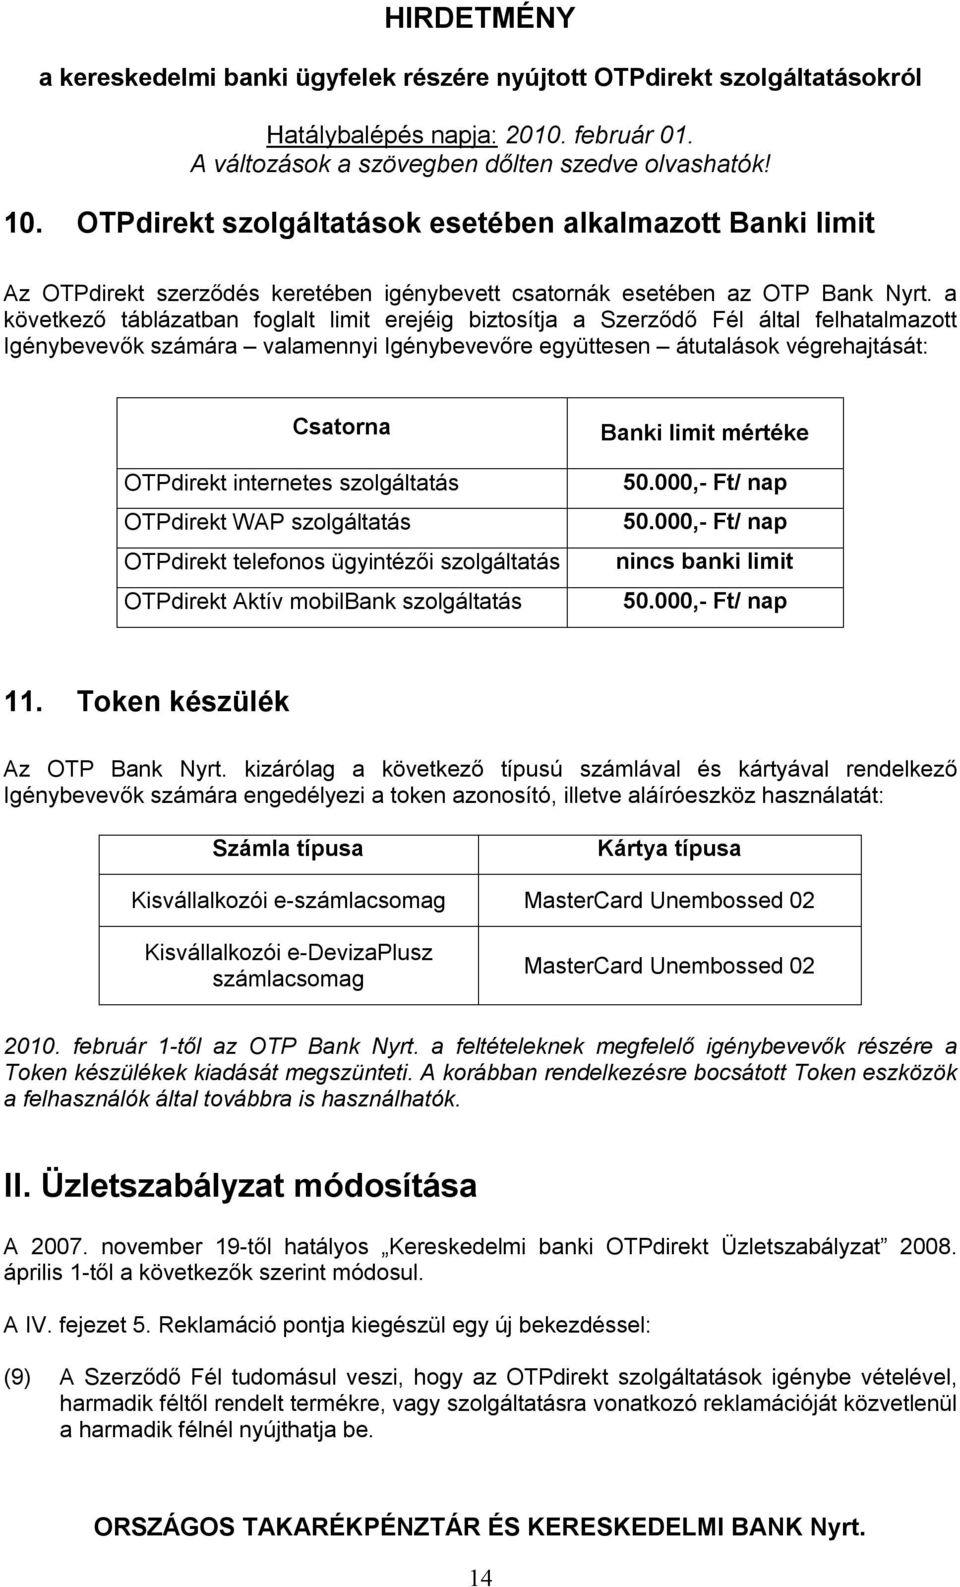 internetes szolgáltatás OTPdirekt WAP szolgáltatás OTPdirekt telefonos ügyintézői szolgáltatás OTPdirekt Aktív mobilbank szolgáltatás Banki limit mértéke 50.000,- Ft/ nap 50.